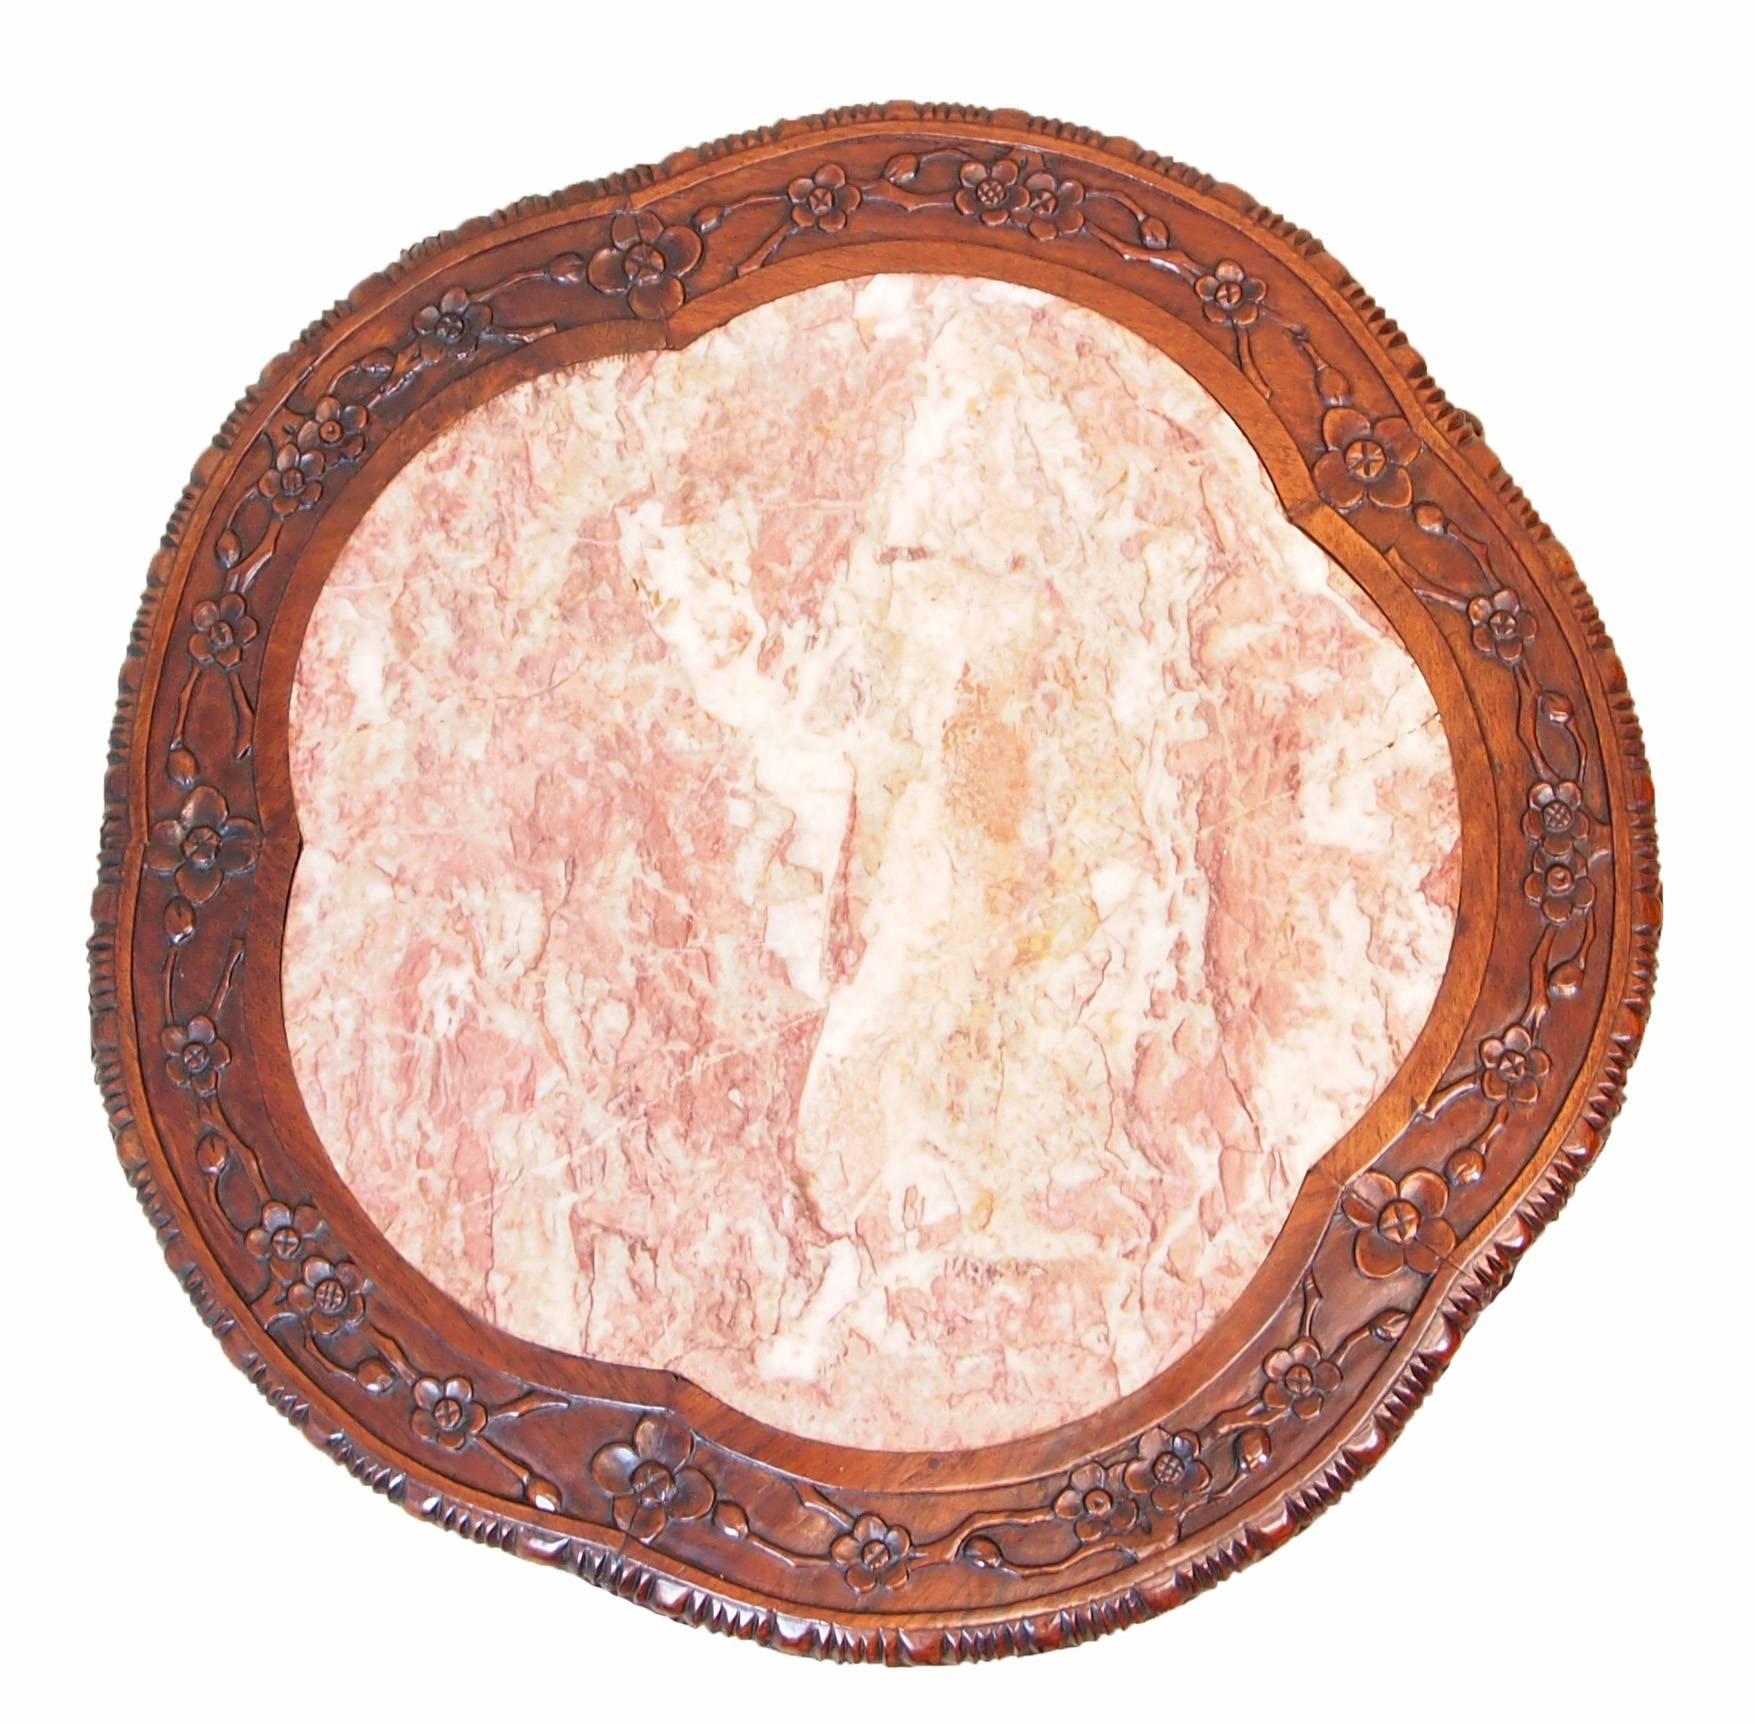 Ein orientalischer Hartholzständer oder Couchtisch mit Marmoreinlage aus dem späten 19
Geformte Platte und geschnitzte Verzierung auf Cabriole-Beinen mit Unterbau.